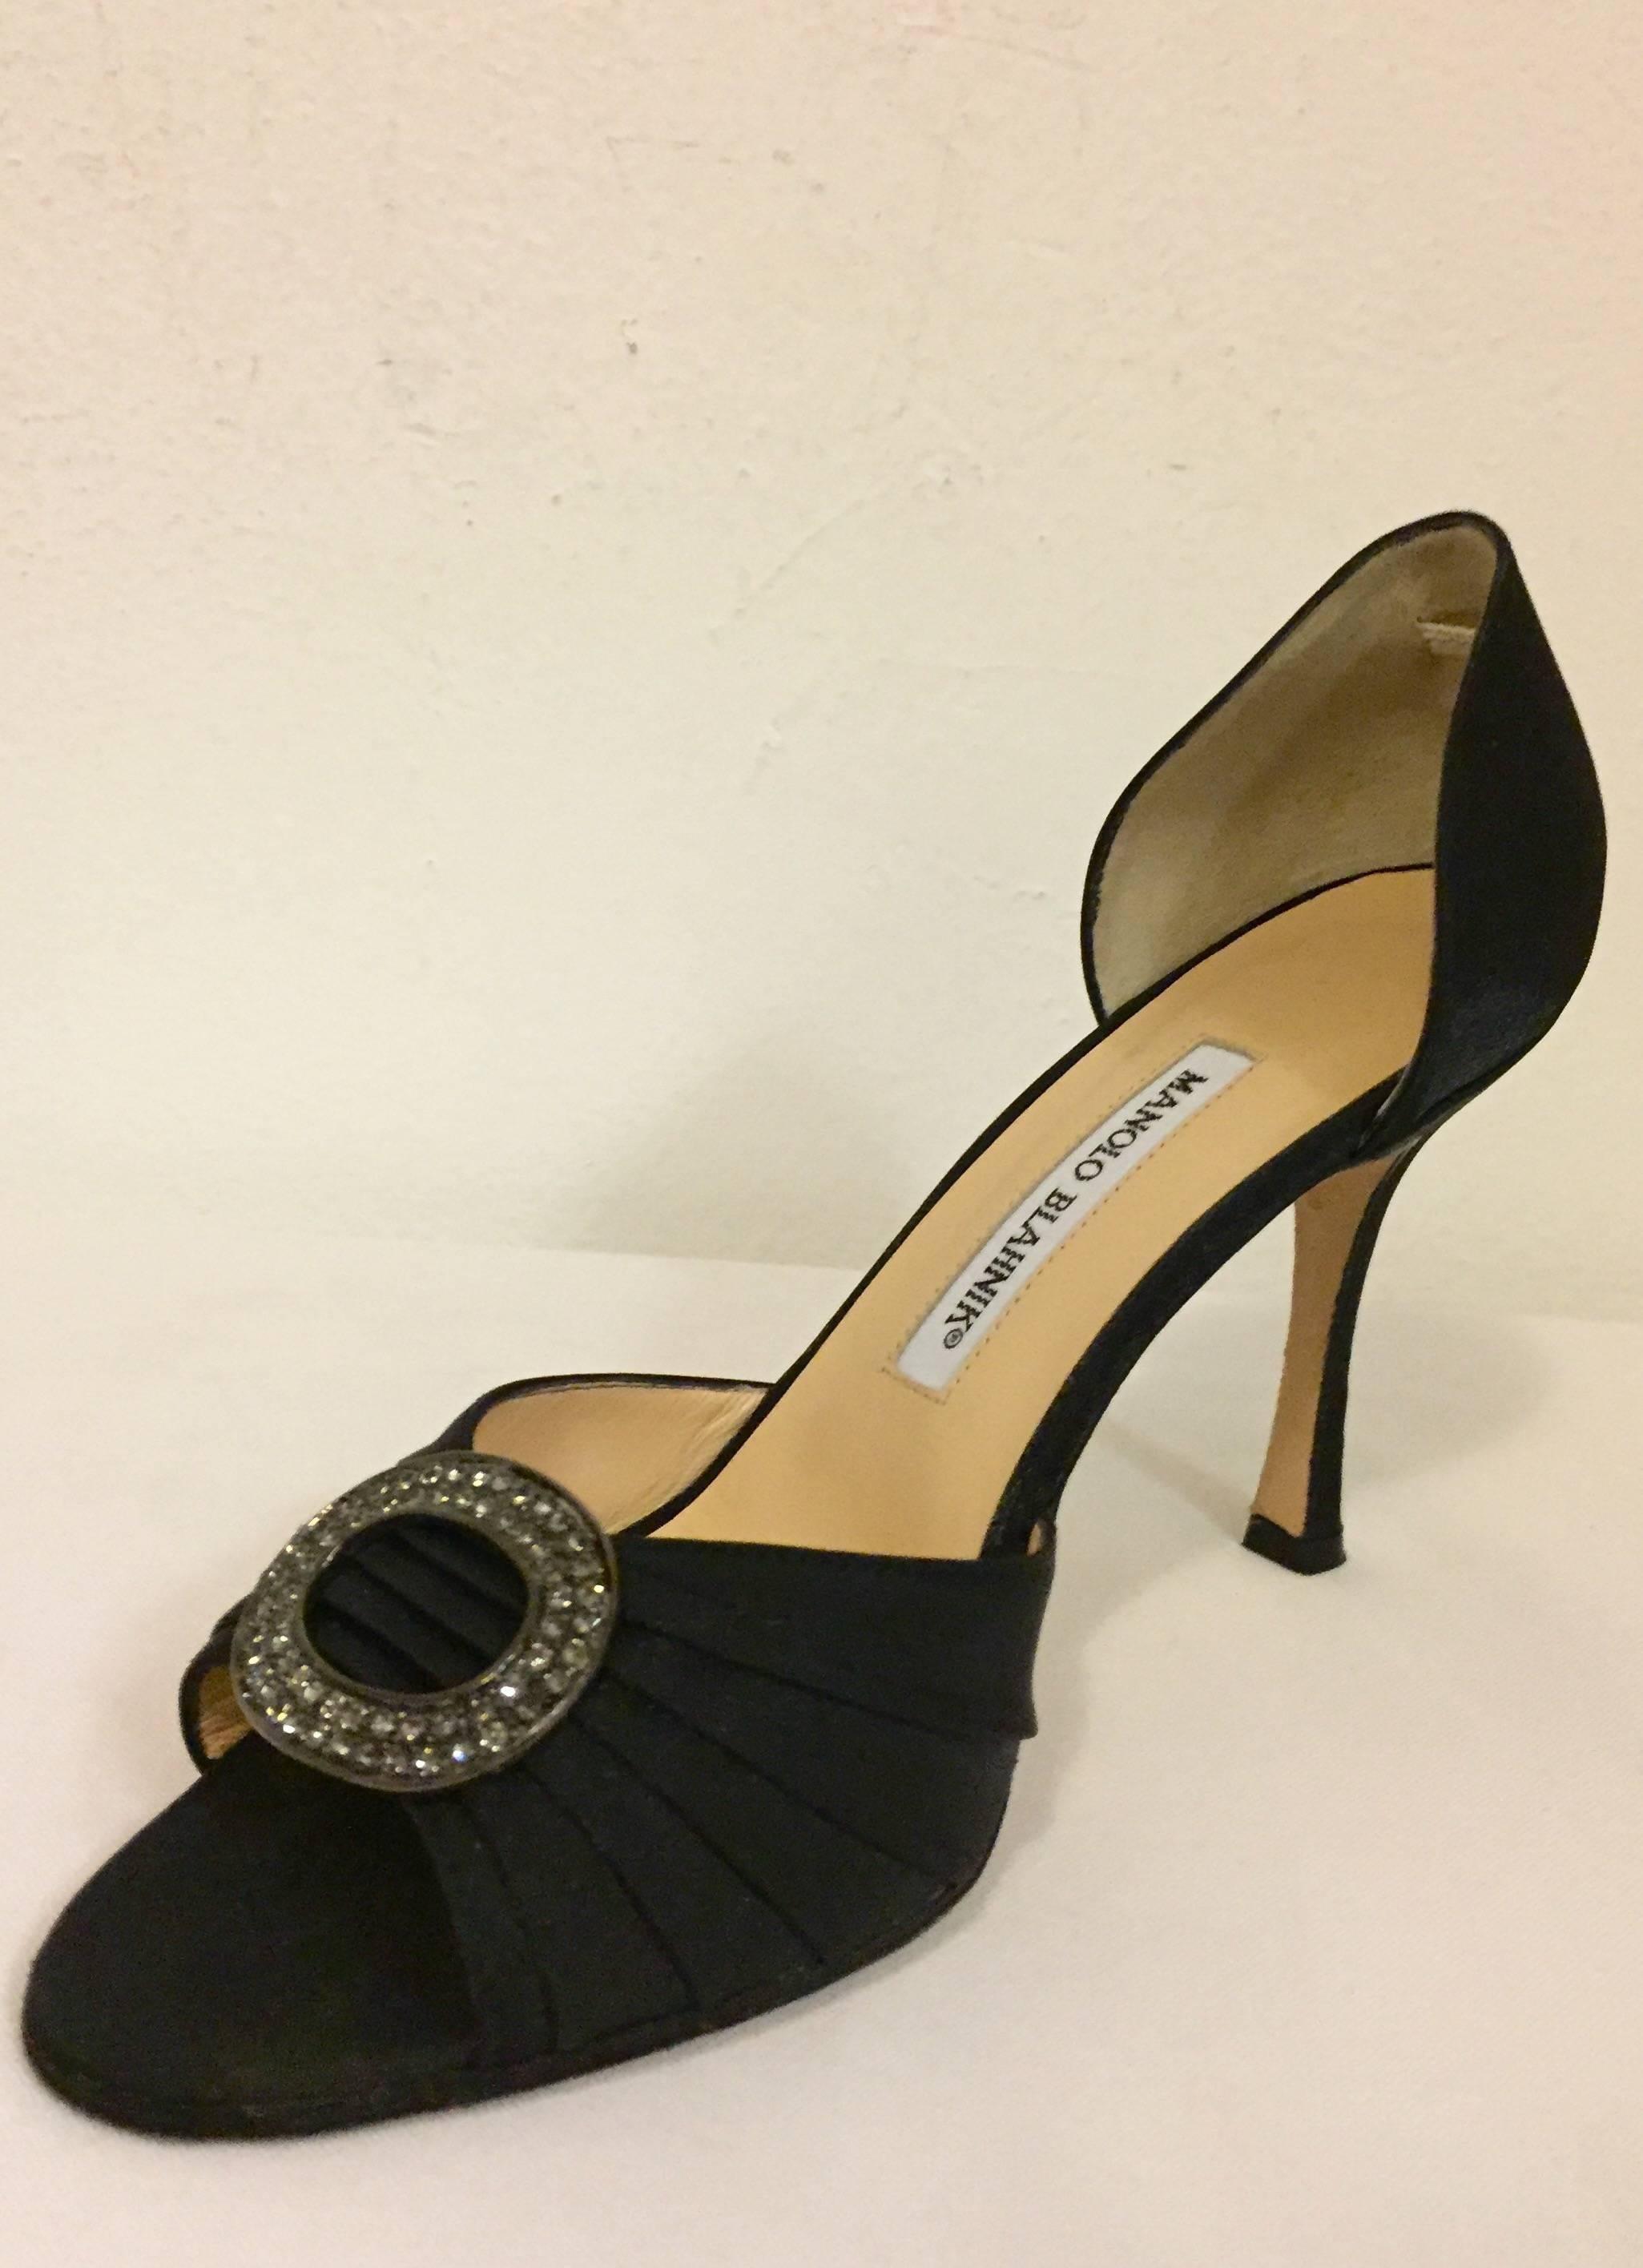 Women's Marvelous Manolo Blahnik Evening Shoes in Black Silk